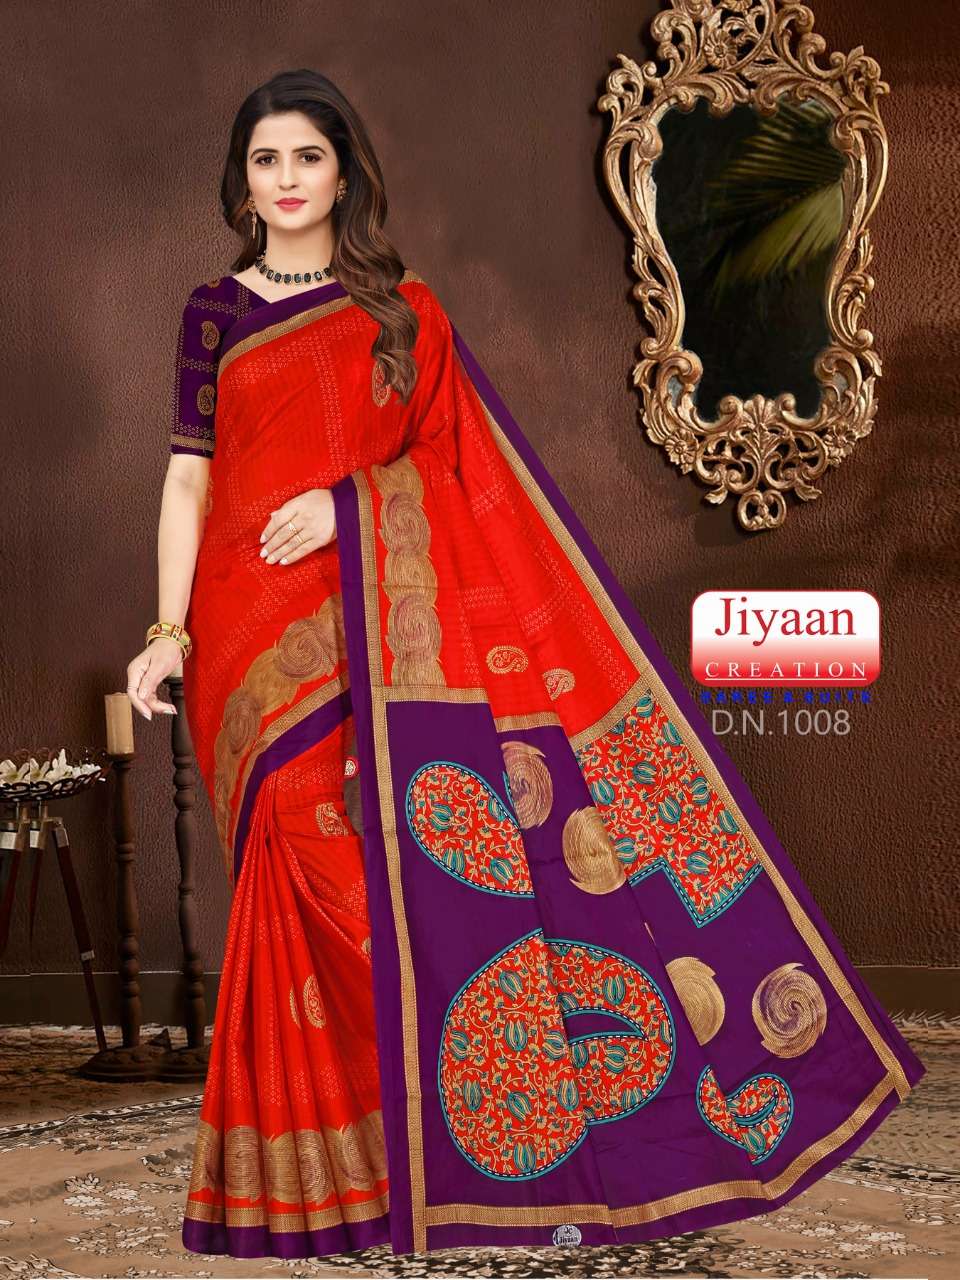 Miss India By Jiyan Creation Sarees Designer Wholesale Online Sarees Set